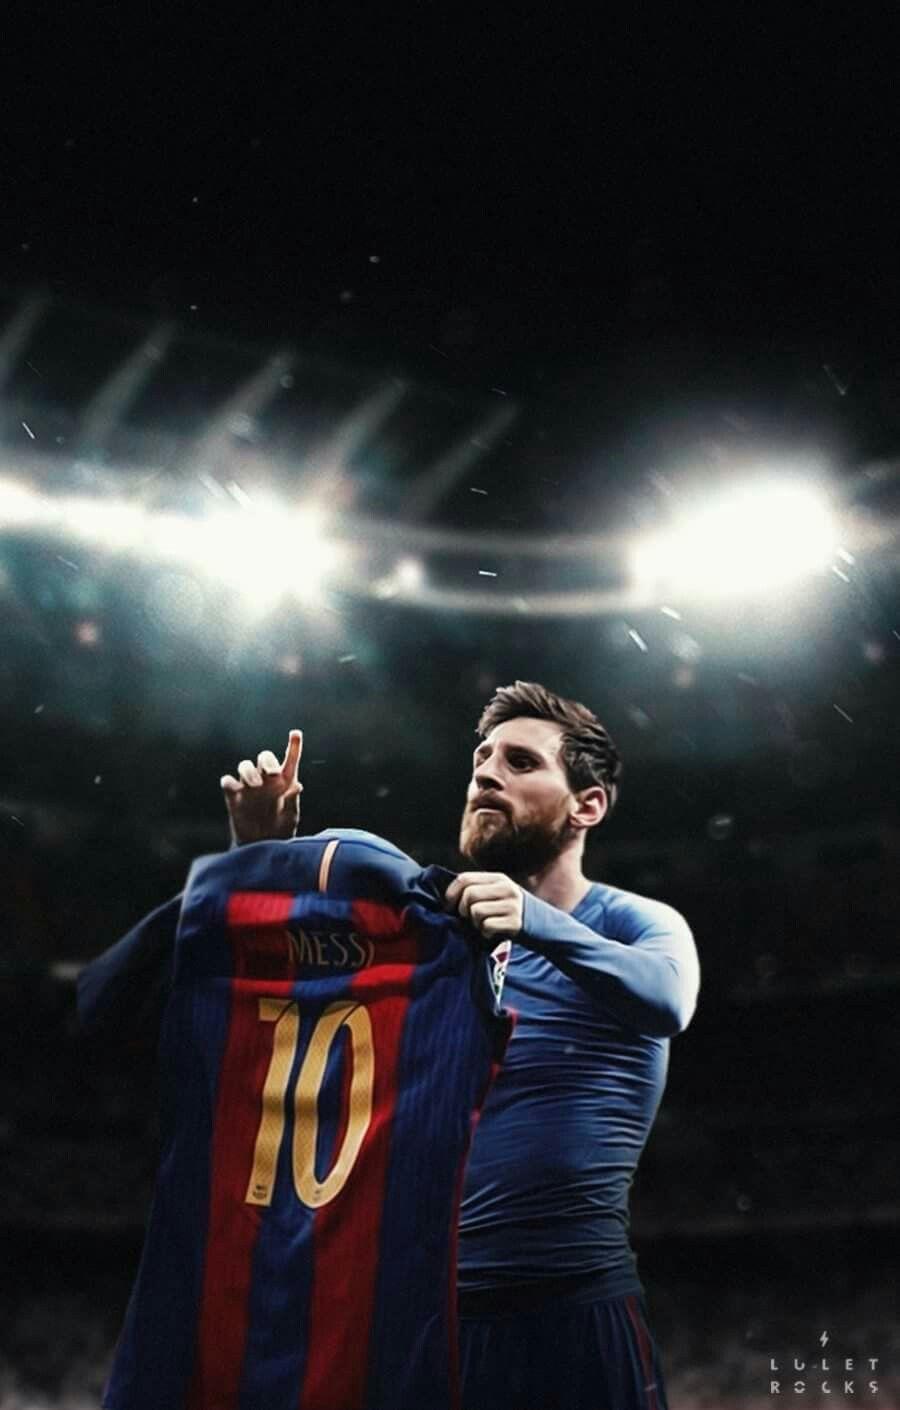 Tưởng niệm Messi Commemoration Wallpaper mang ý nghĩa đặc biệt trong lòng người hâm mộ bóng đá. Hãy cùng nhìn lại những khoảnh khắc đáng nhớ của Messi và cảm nhận sức mạnh của một tay săn bàn đích thực.